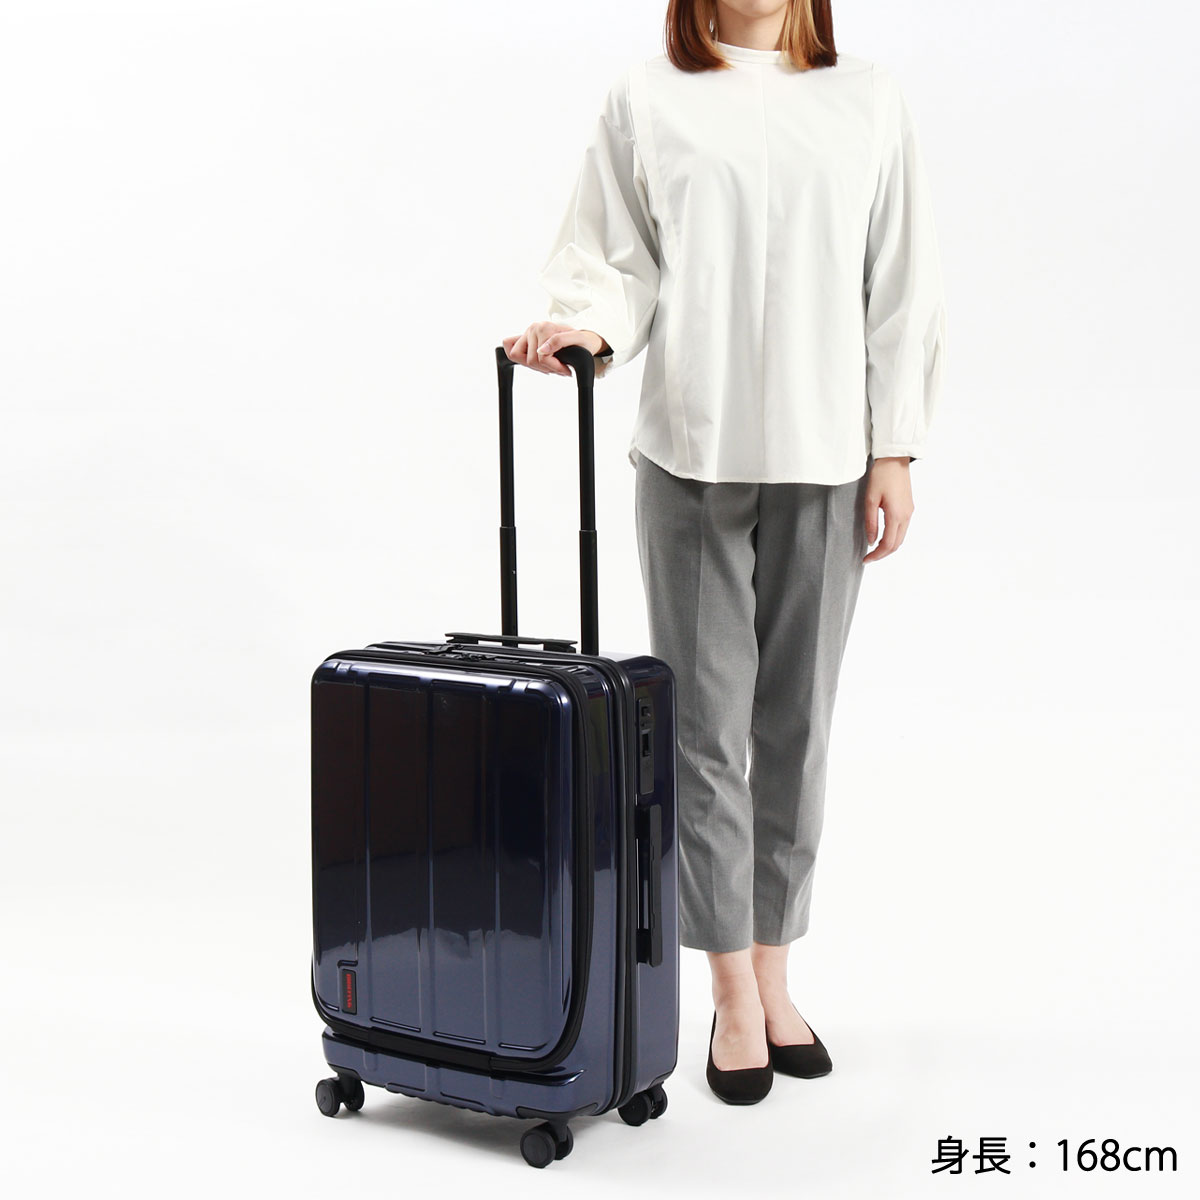 日本正規品 ブリーフィング スーツケース BRIEFING M Mサイズ 60L 軽量 